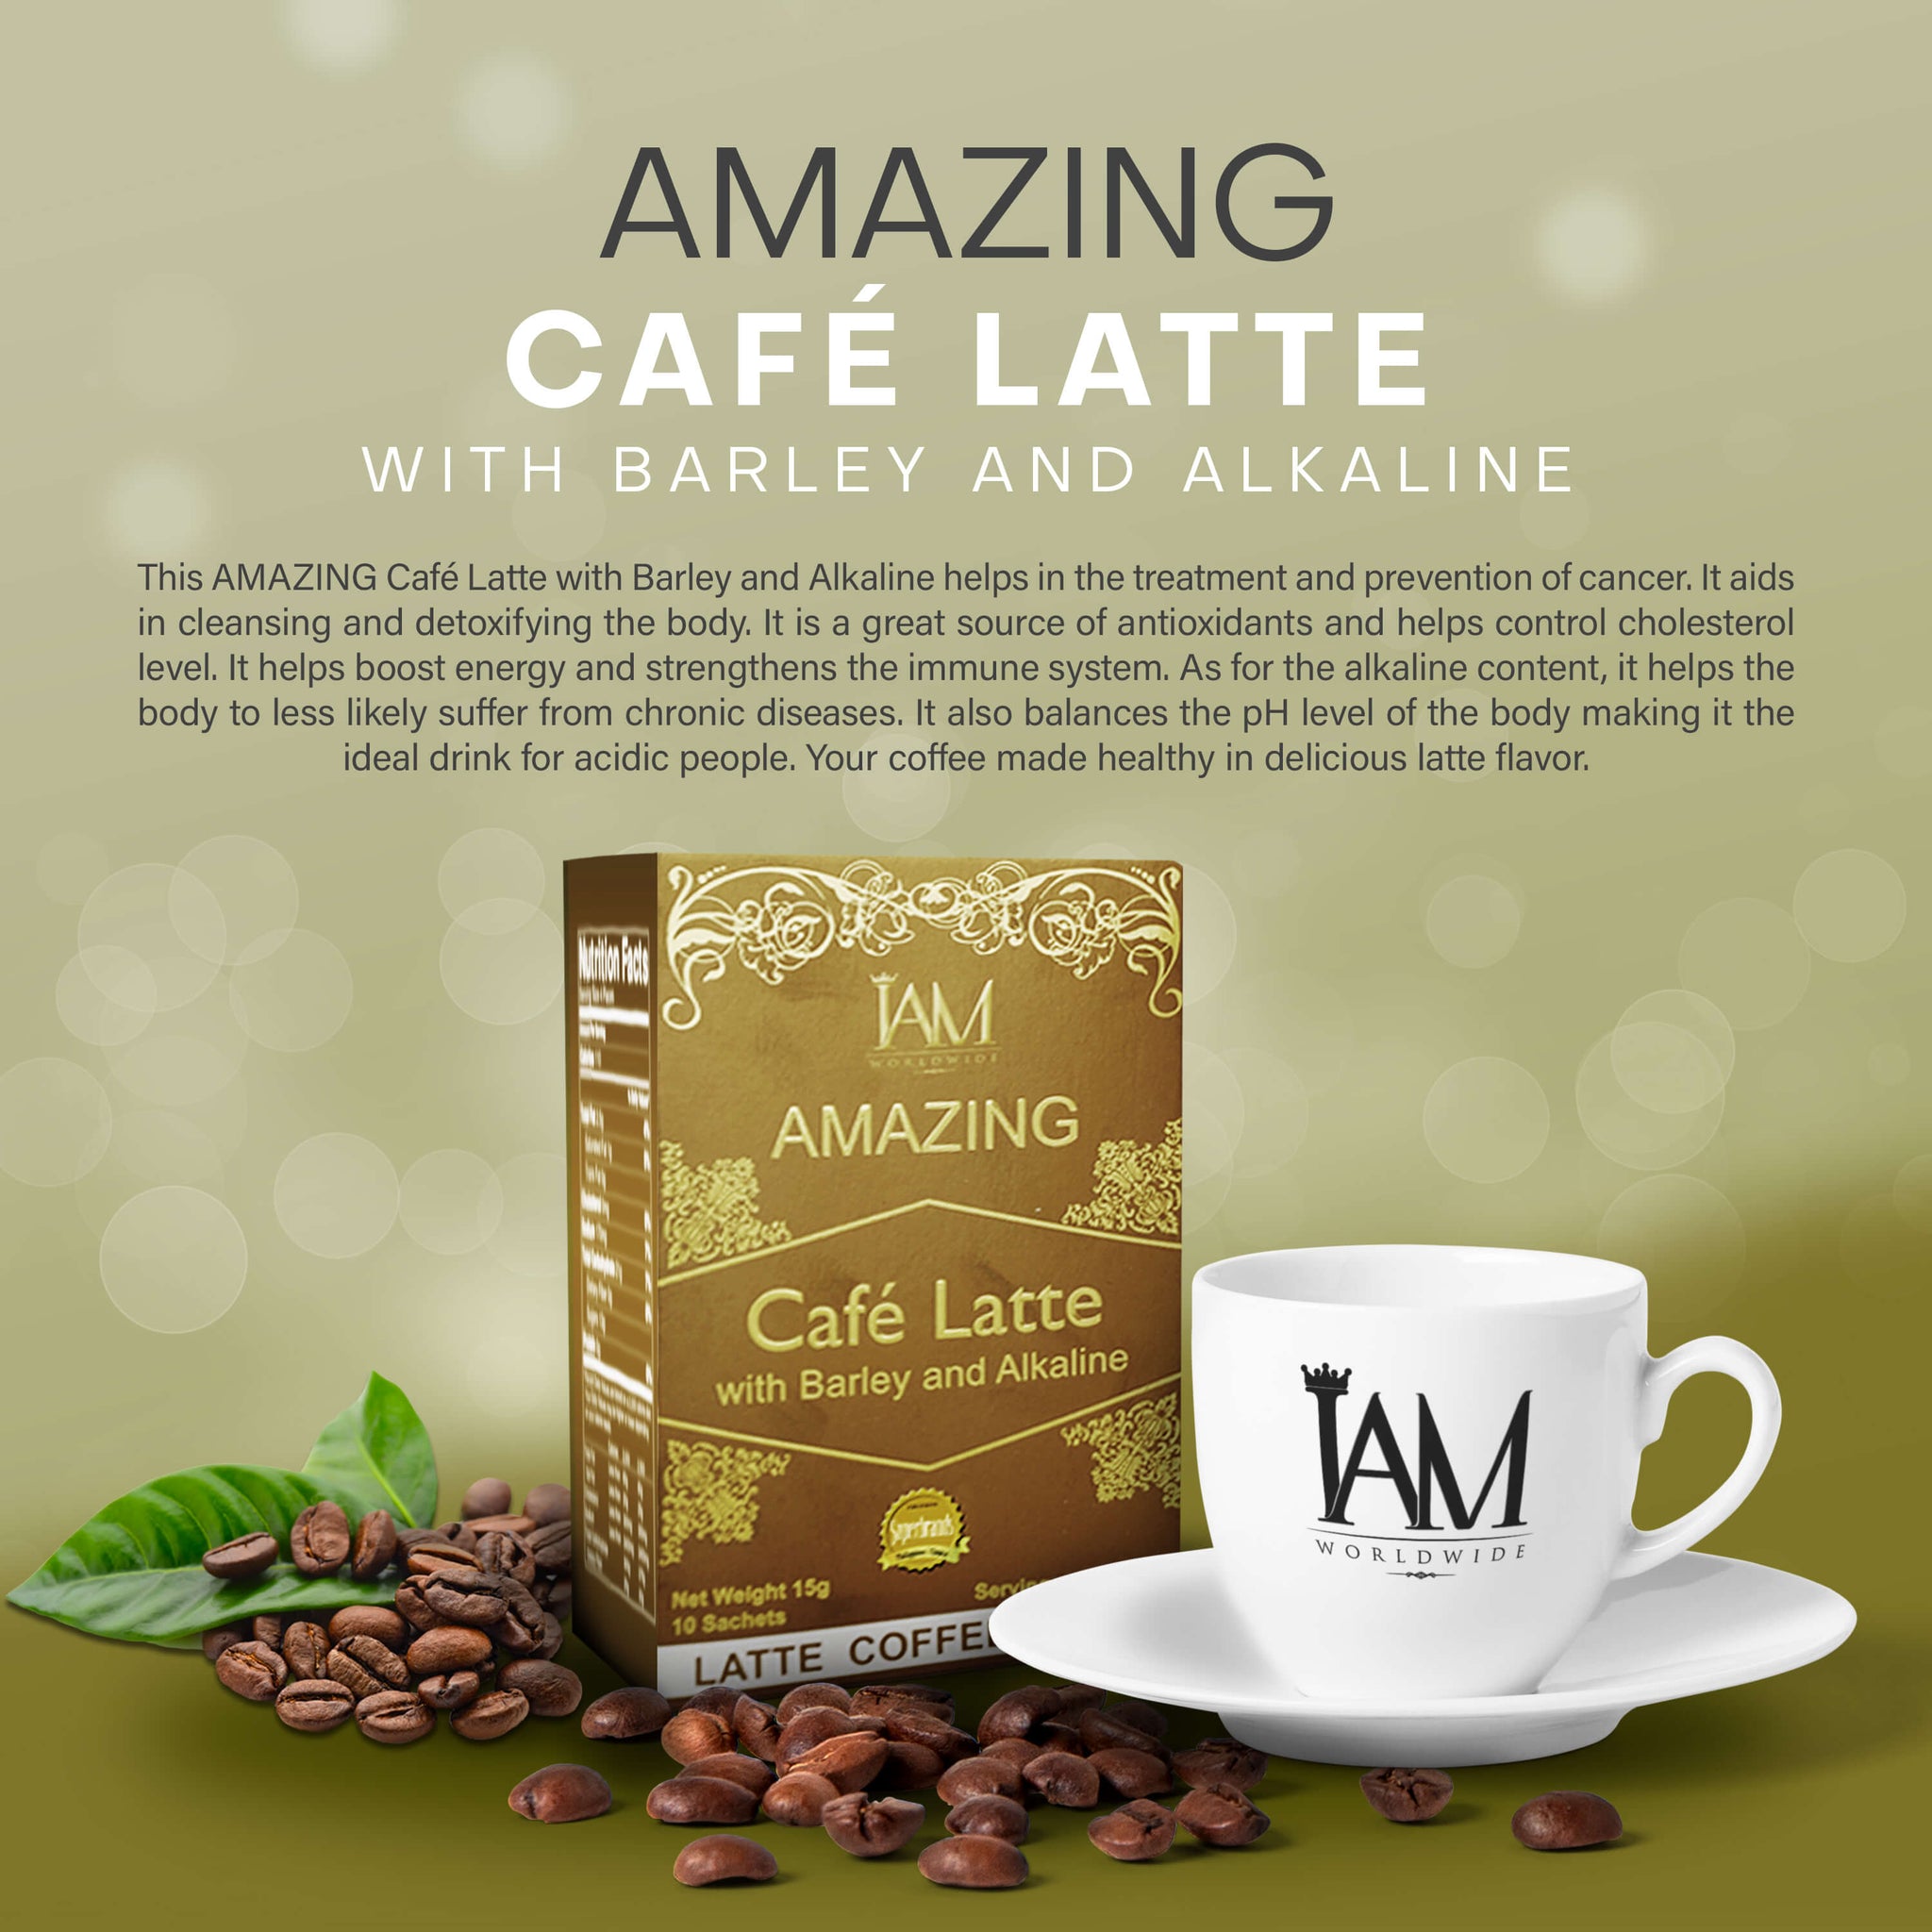 Amazing Cafe Mocha with Barley and Alkaline - IAM Worldwide